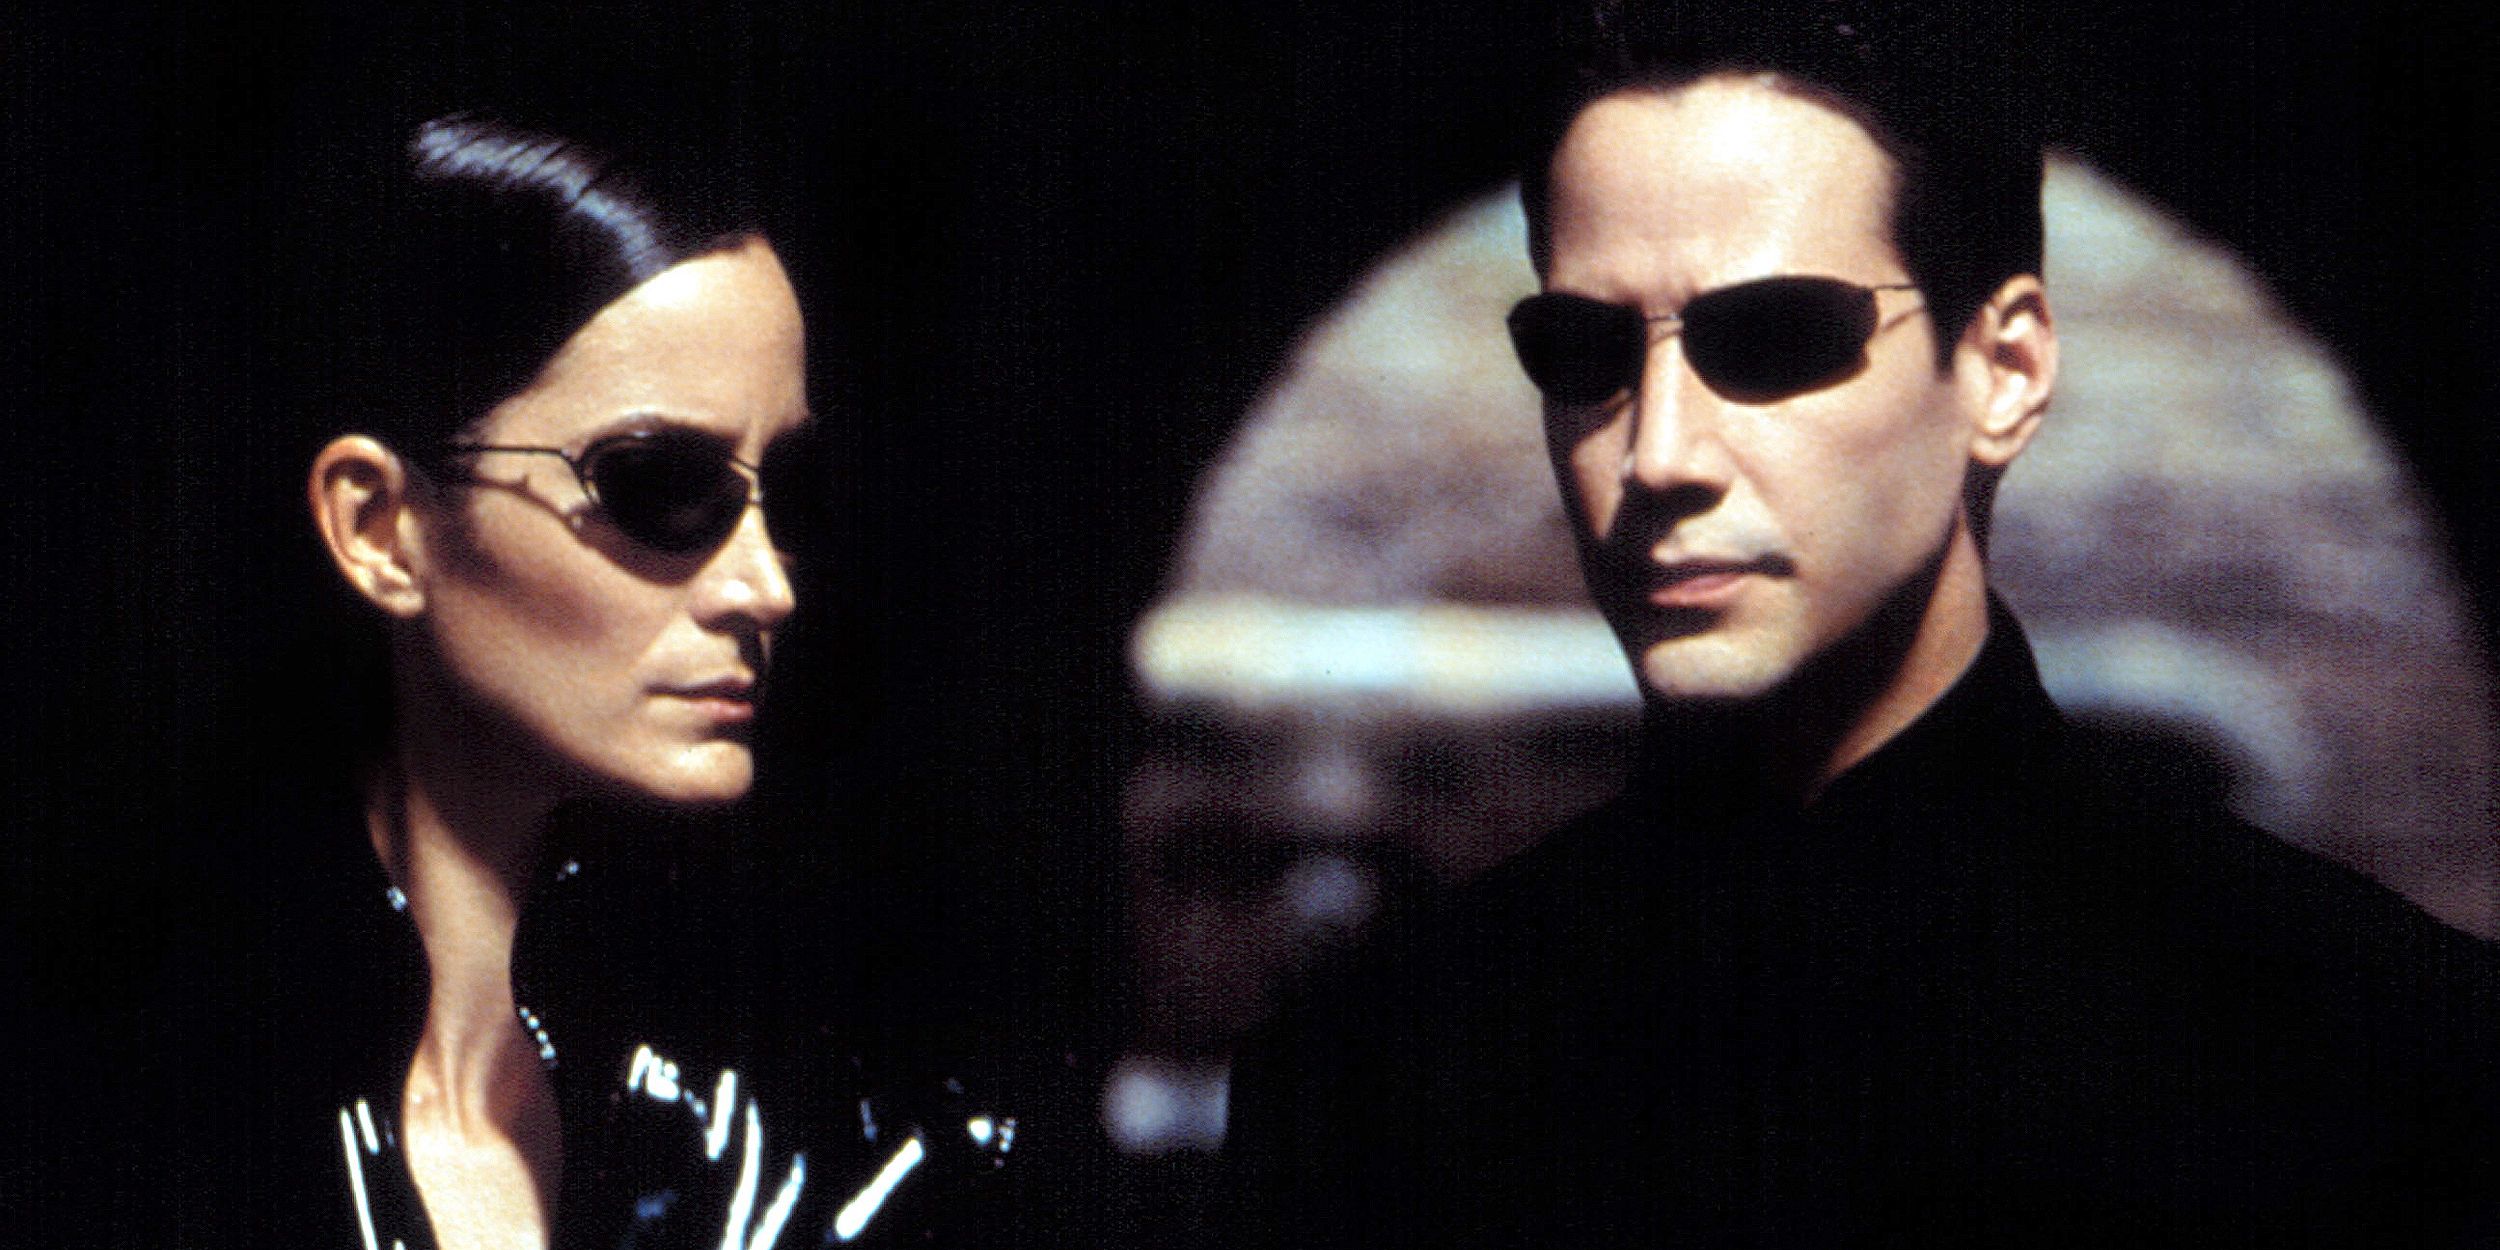 Matrix 4
Wachowski
Keanu Reeves